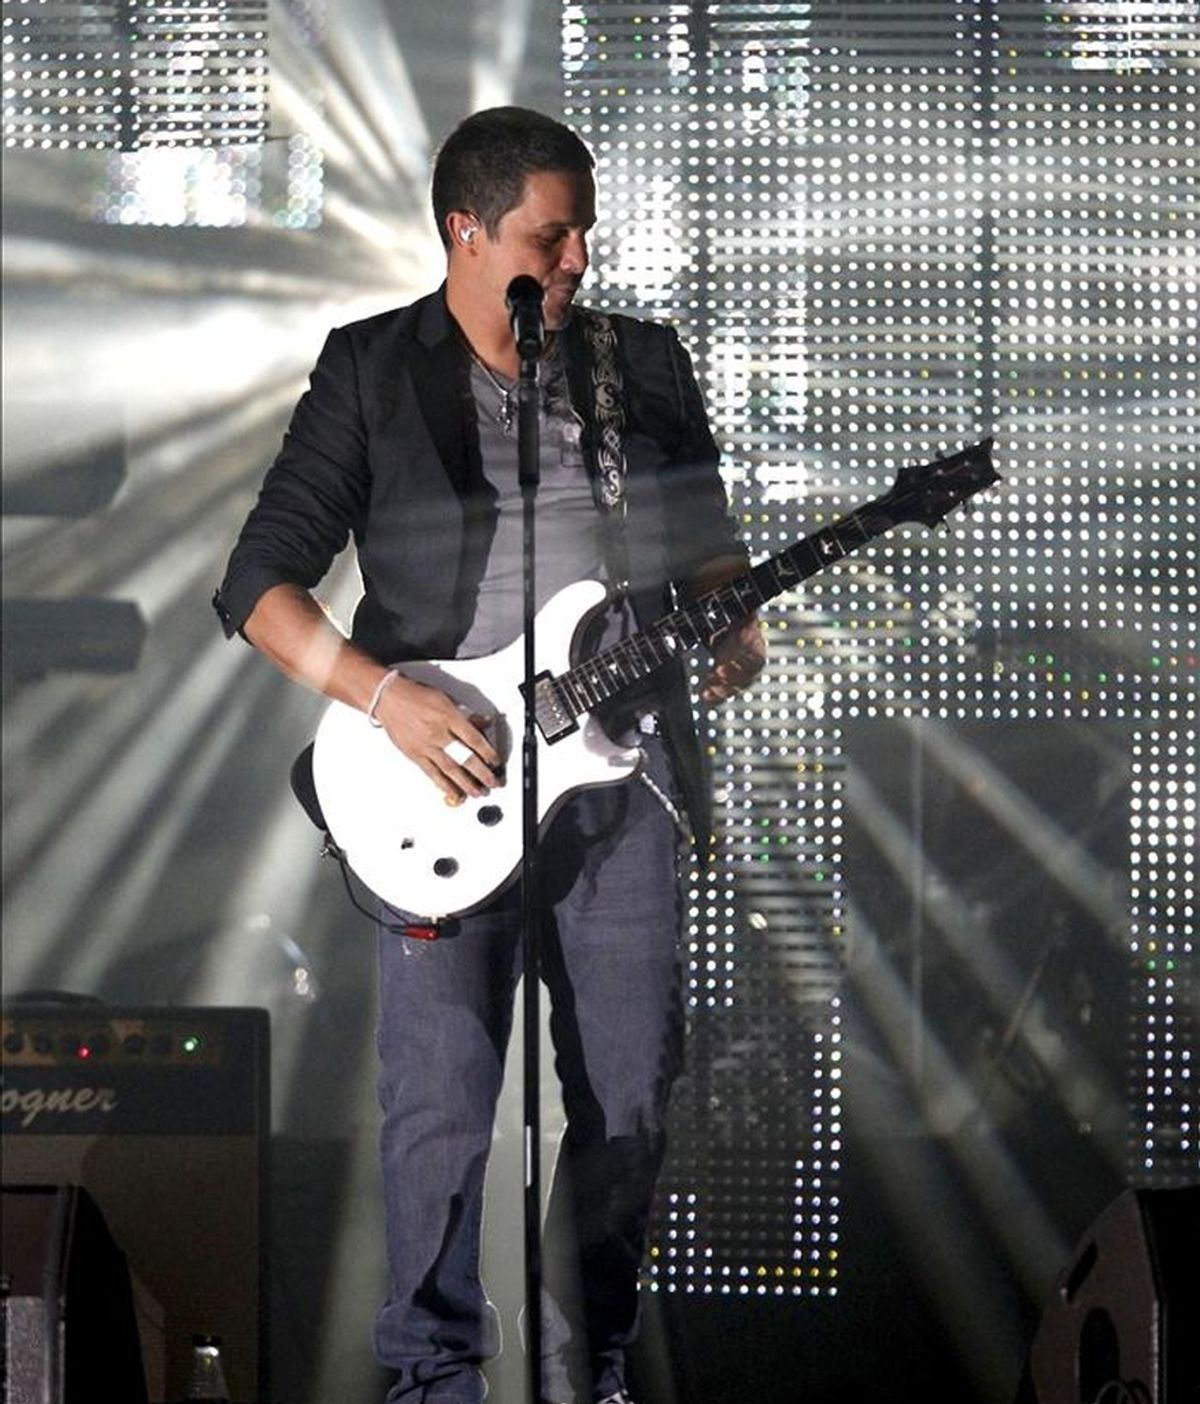 Fotografía de archivo (8/9/2010) de Alejandro Sanz durante un concierto ofrecido en el Palacio de los Deportes de Madrid, dentro de su gira "Paraíso Tour". EFE